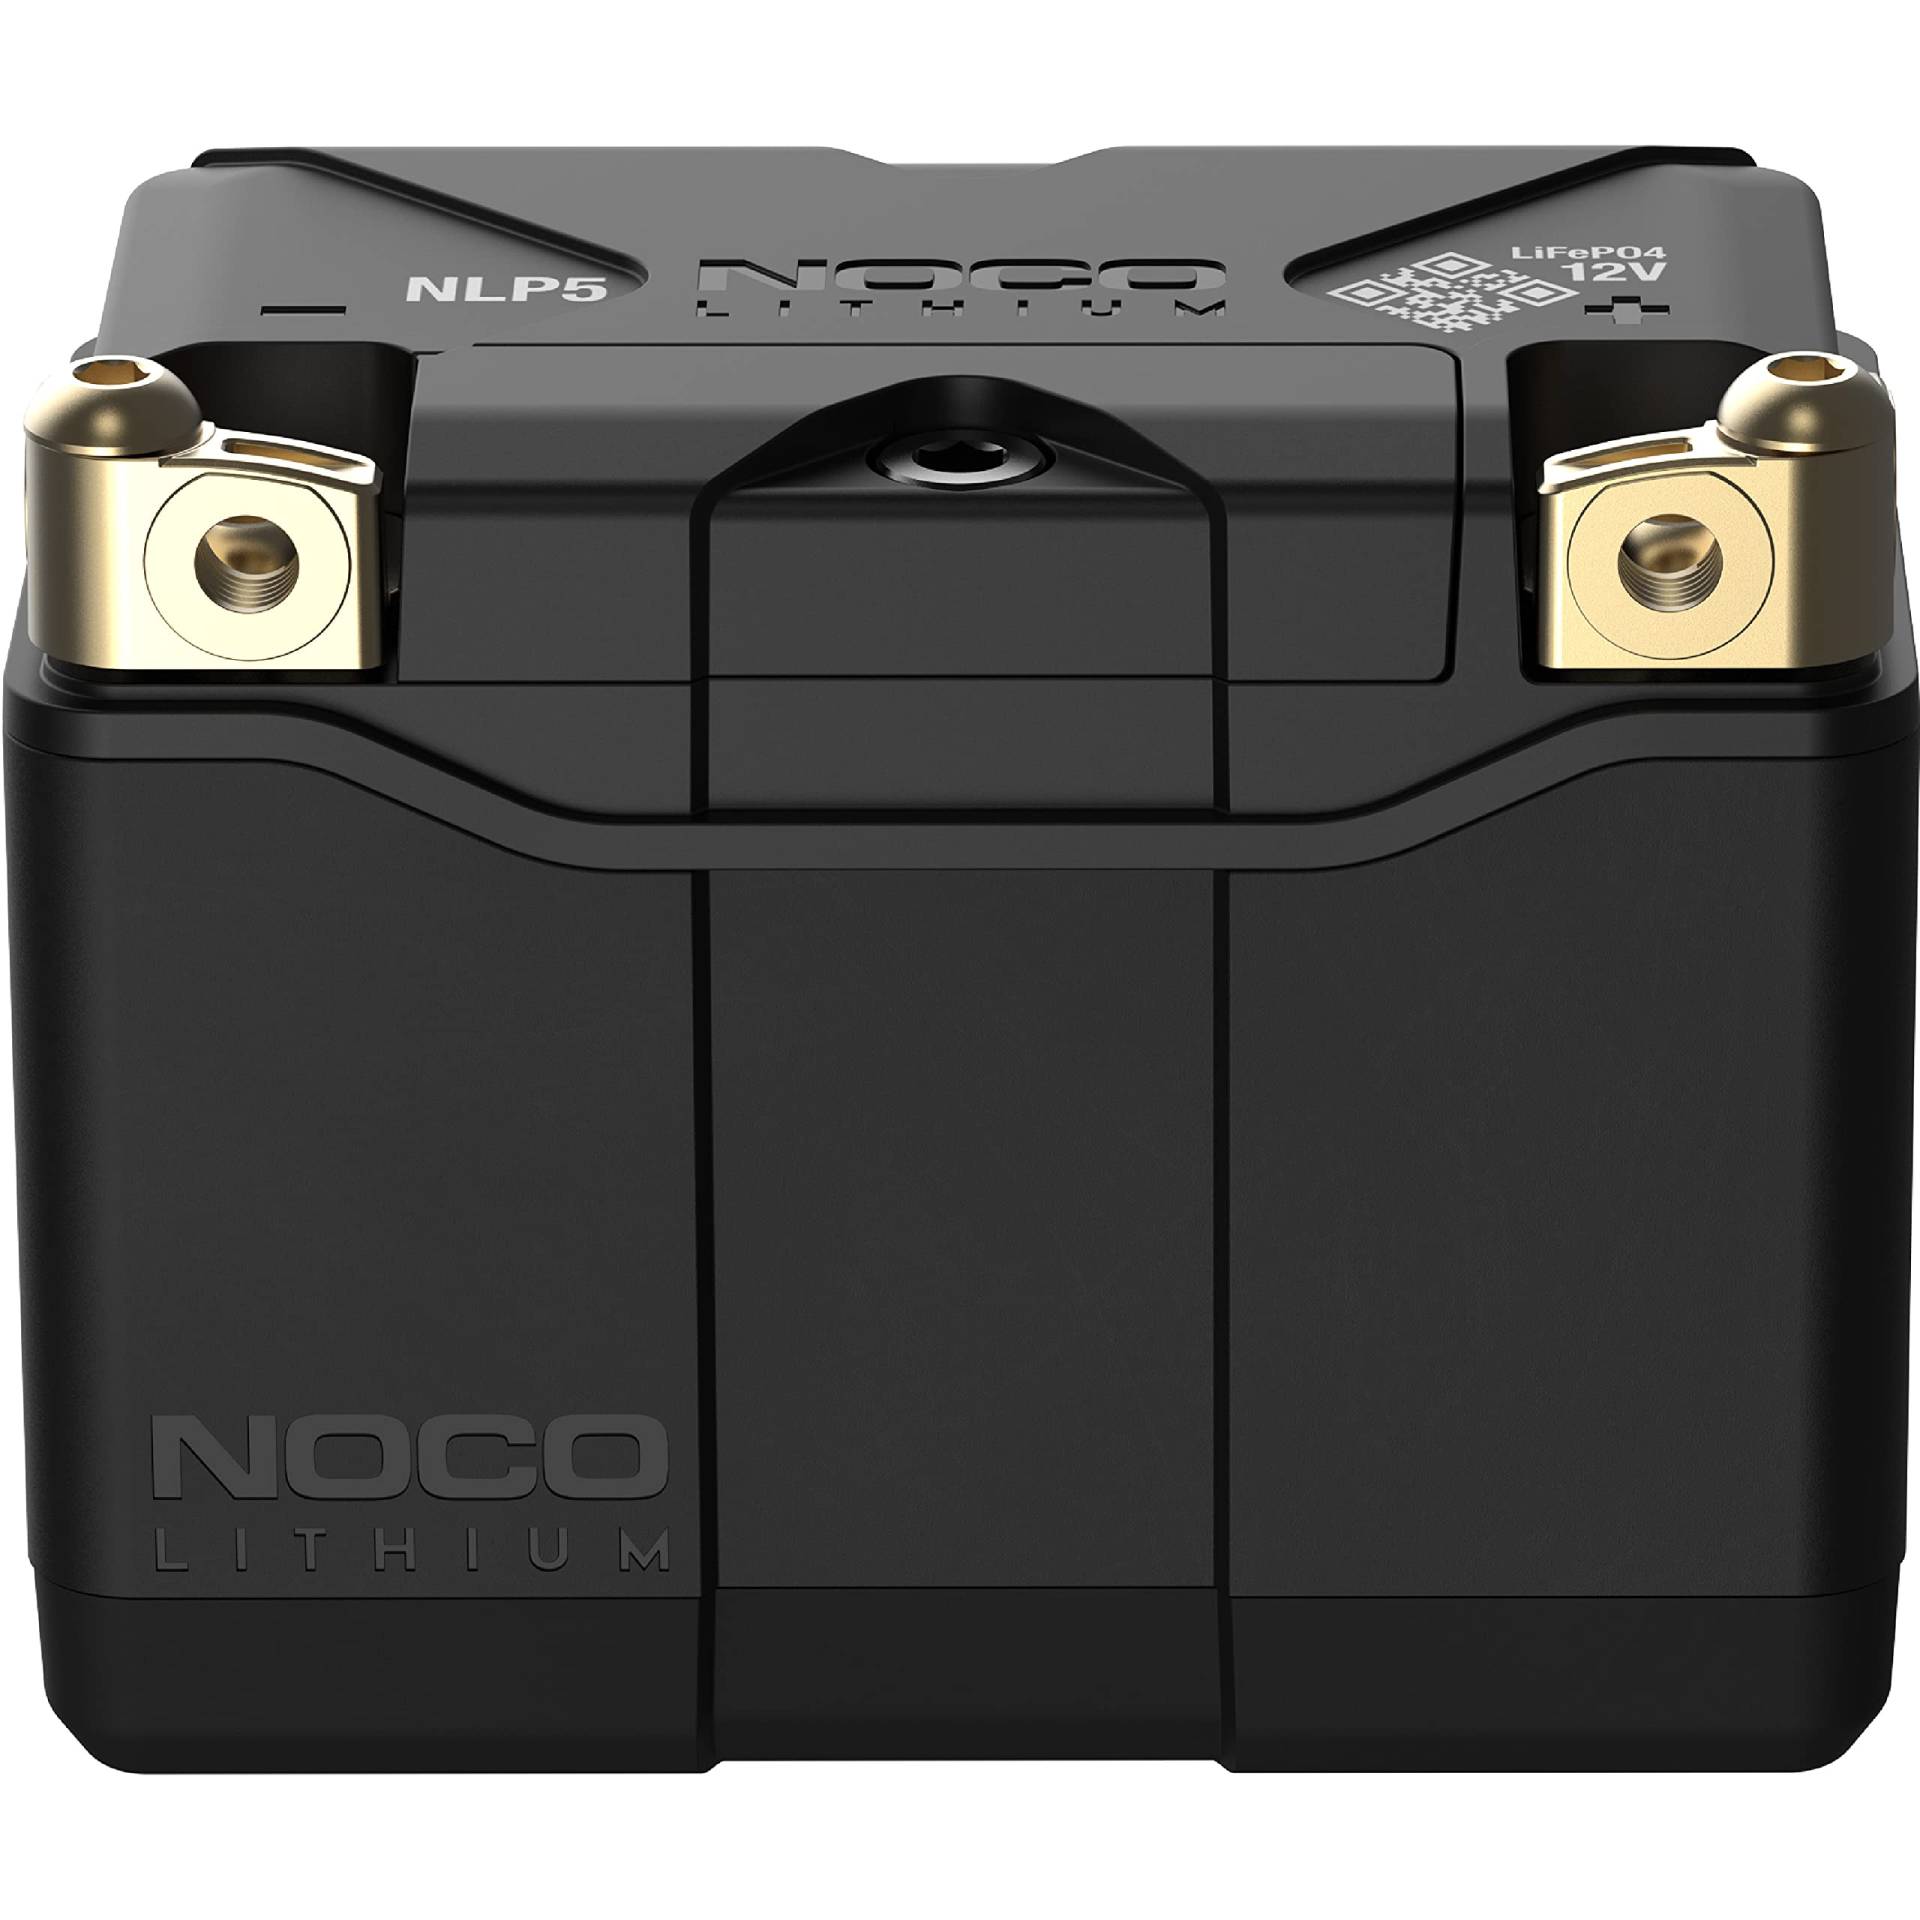 NOCO Lithium NLP5, 250A Powersports-Batterie, 12V 2Ah Litium-Ionen-Batterie für Motorräder, Quads, UTVs, Jet-Skis, Roller, Schneemobile und Rasenmäher von NOCO